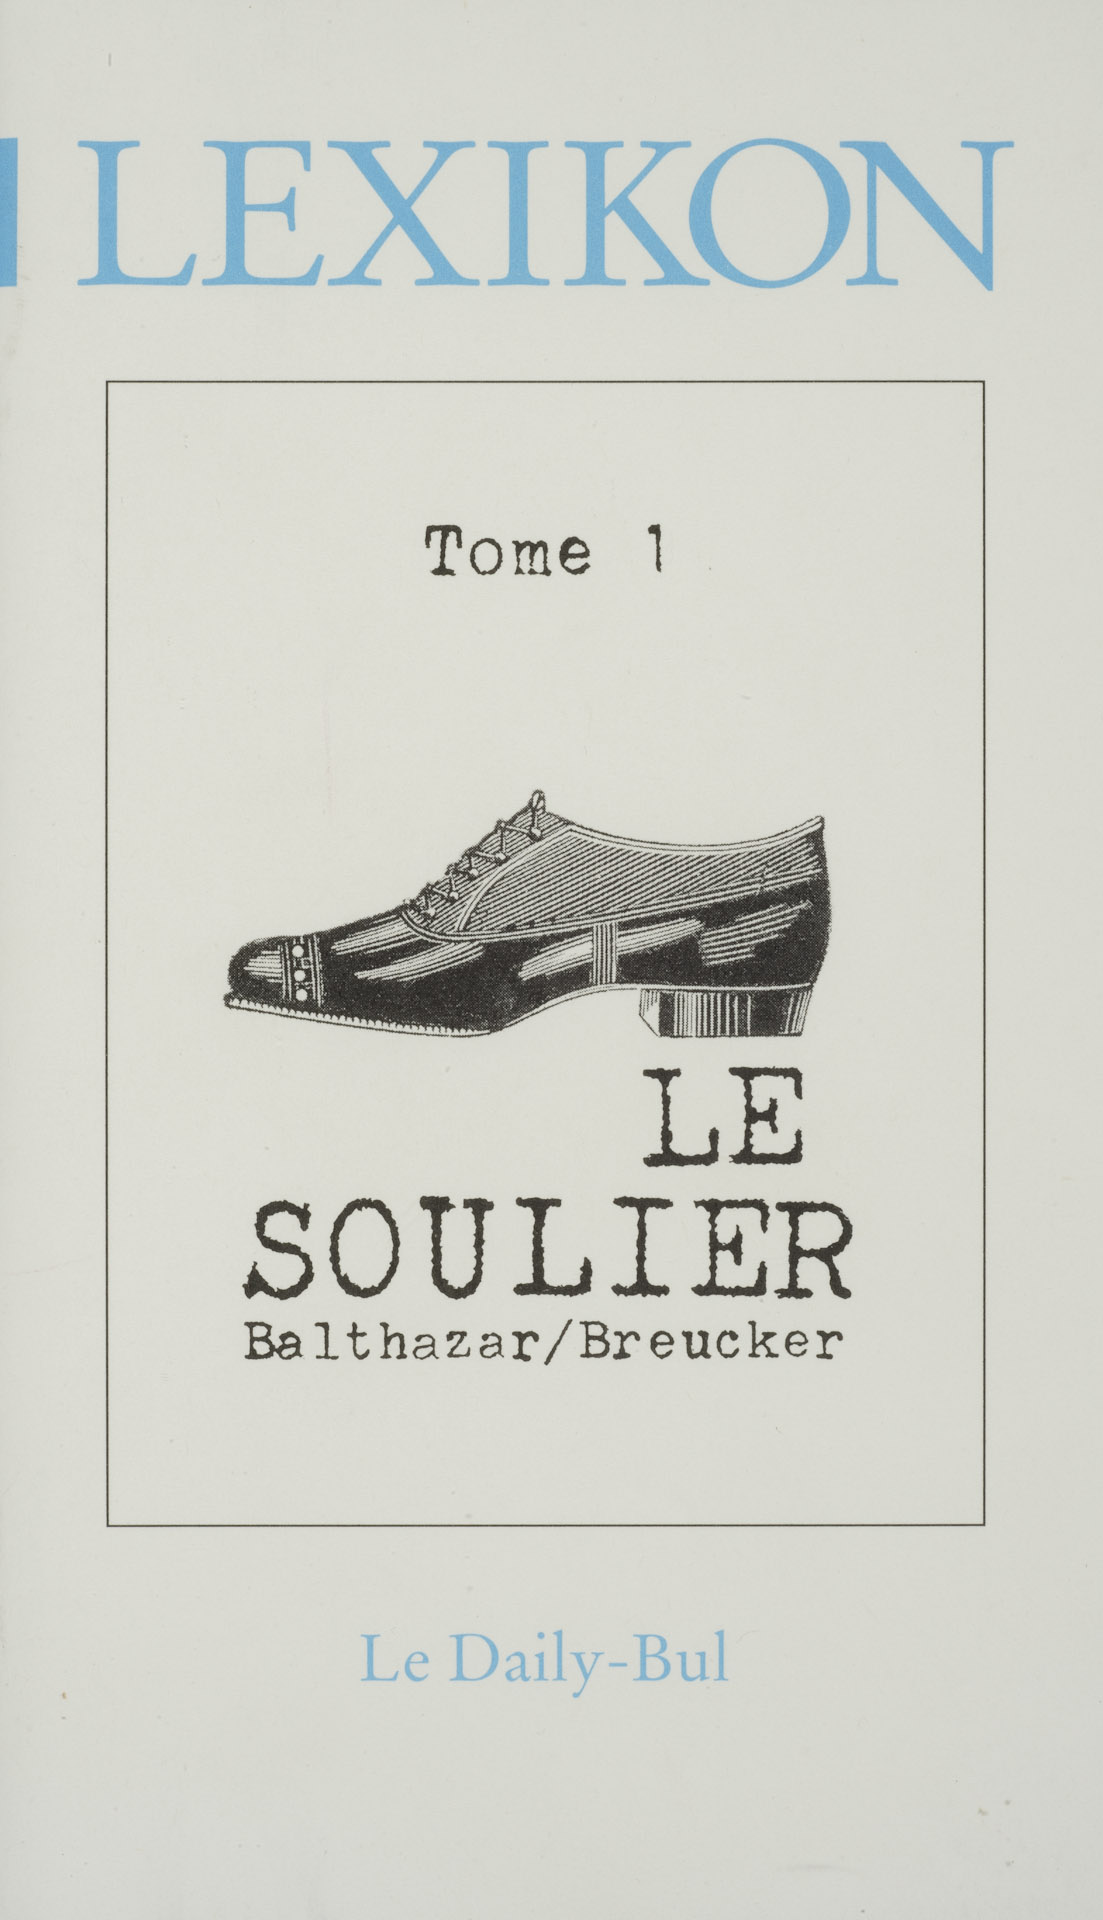 Le soulier (Lexikon tome 1)